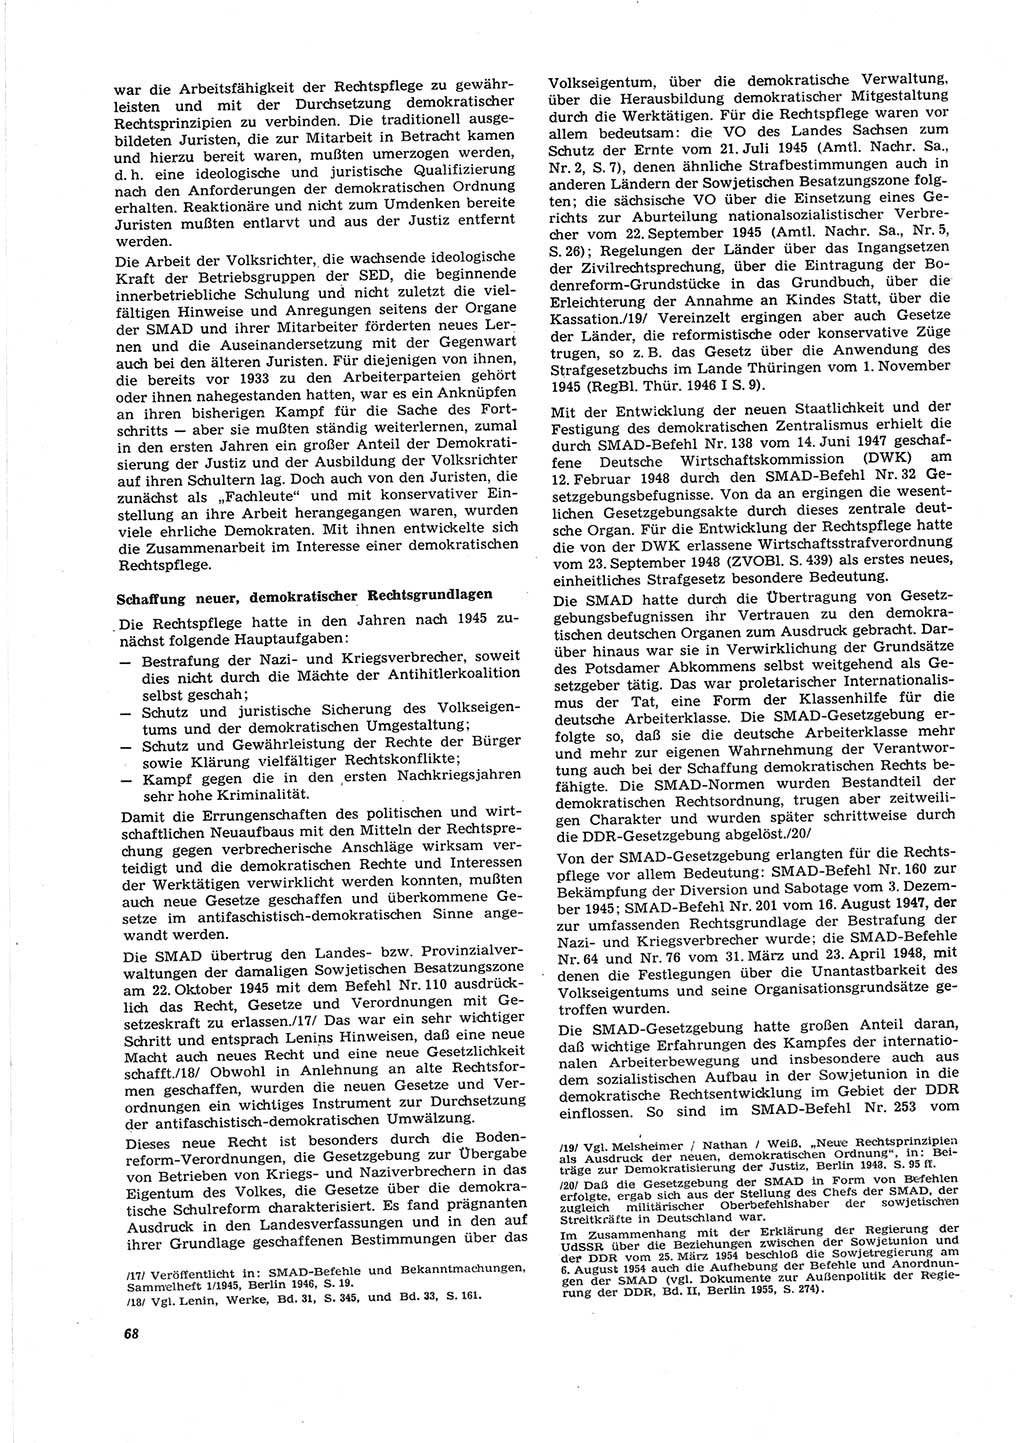 Neue Justiz (NJ), Zeitschrift für Recht und Rechtswissenschaft [Deutsche Demokratische Republik (DDR)], 27. Jahrgang 1973, Seite 68 (NJ DDR 1973, S. 68)